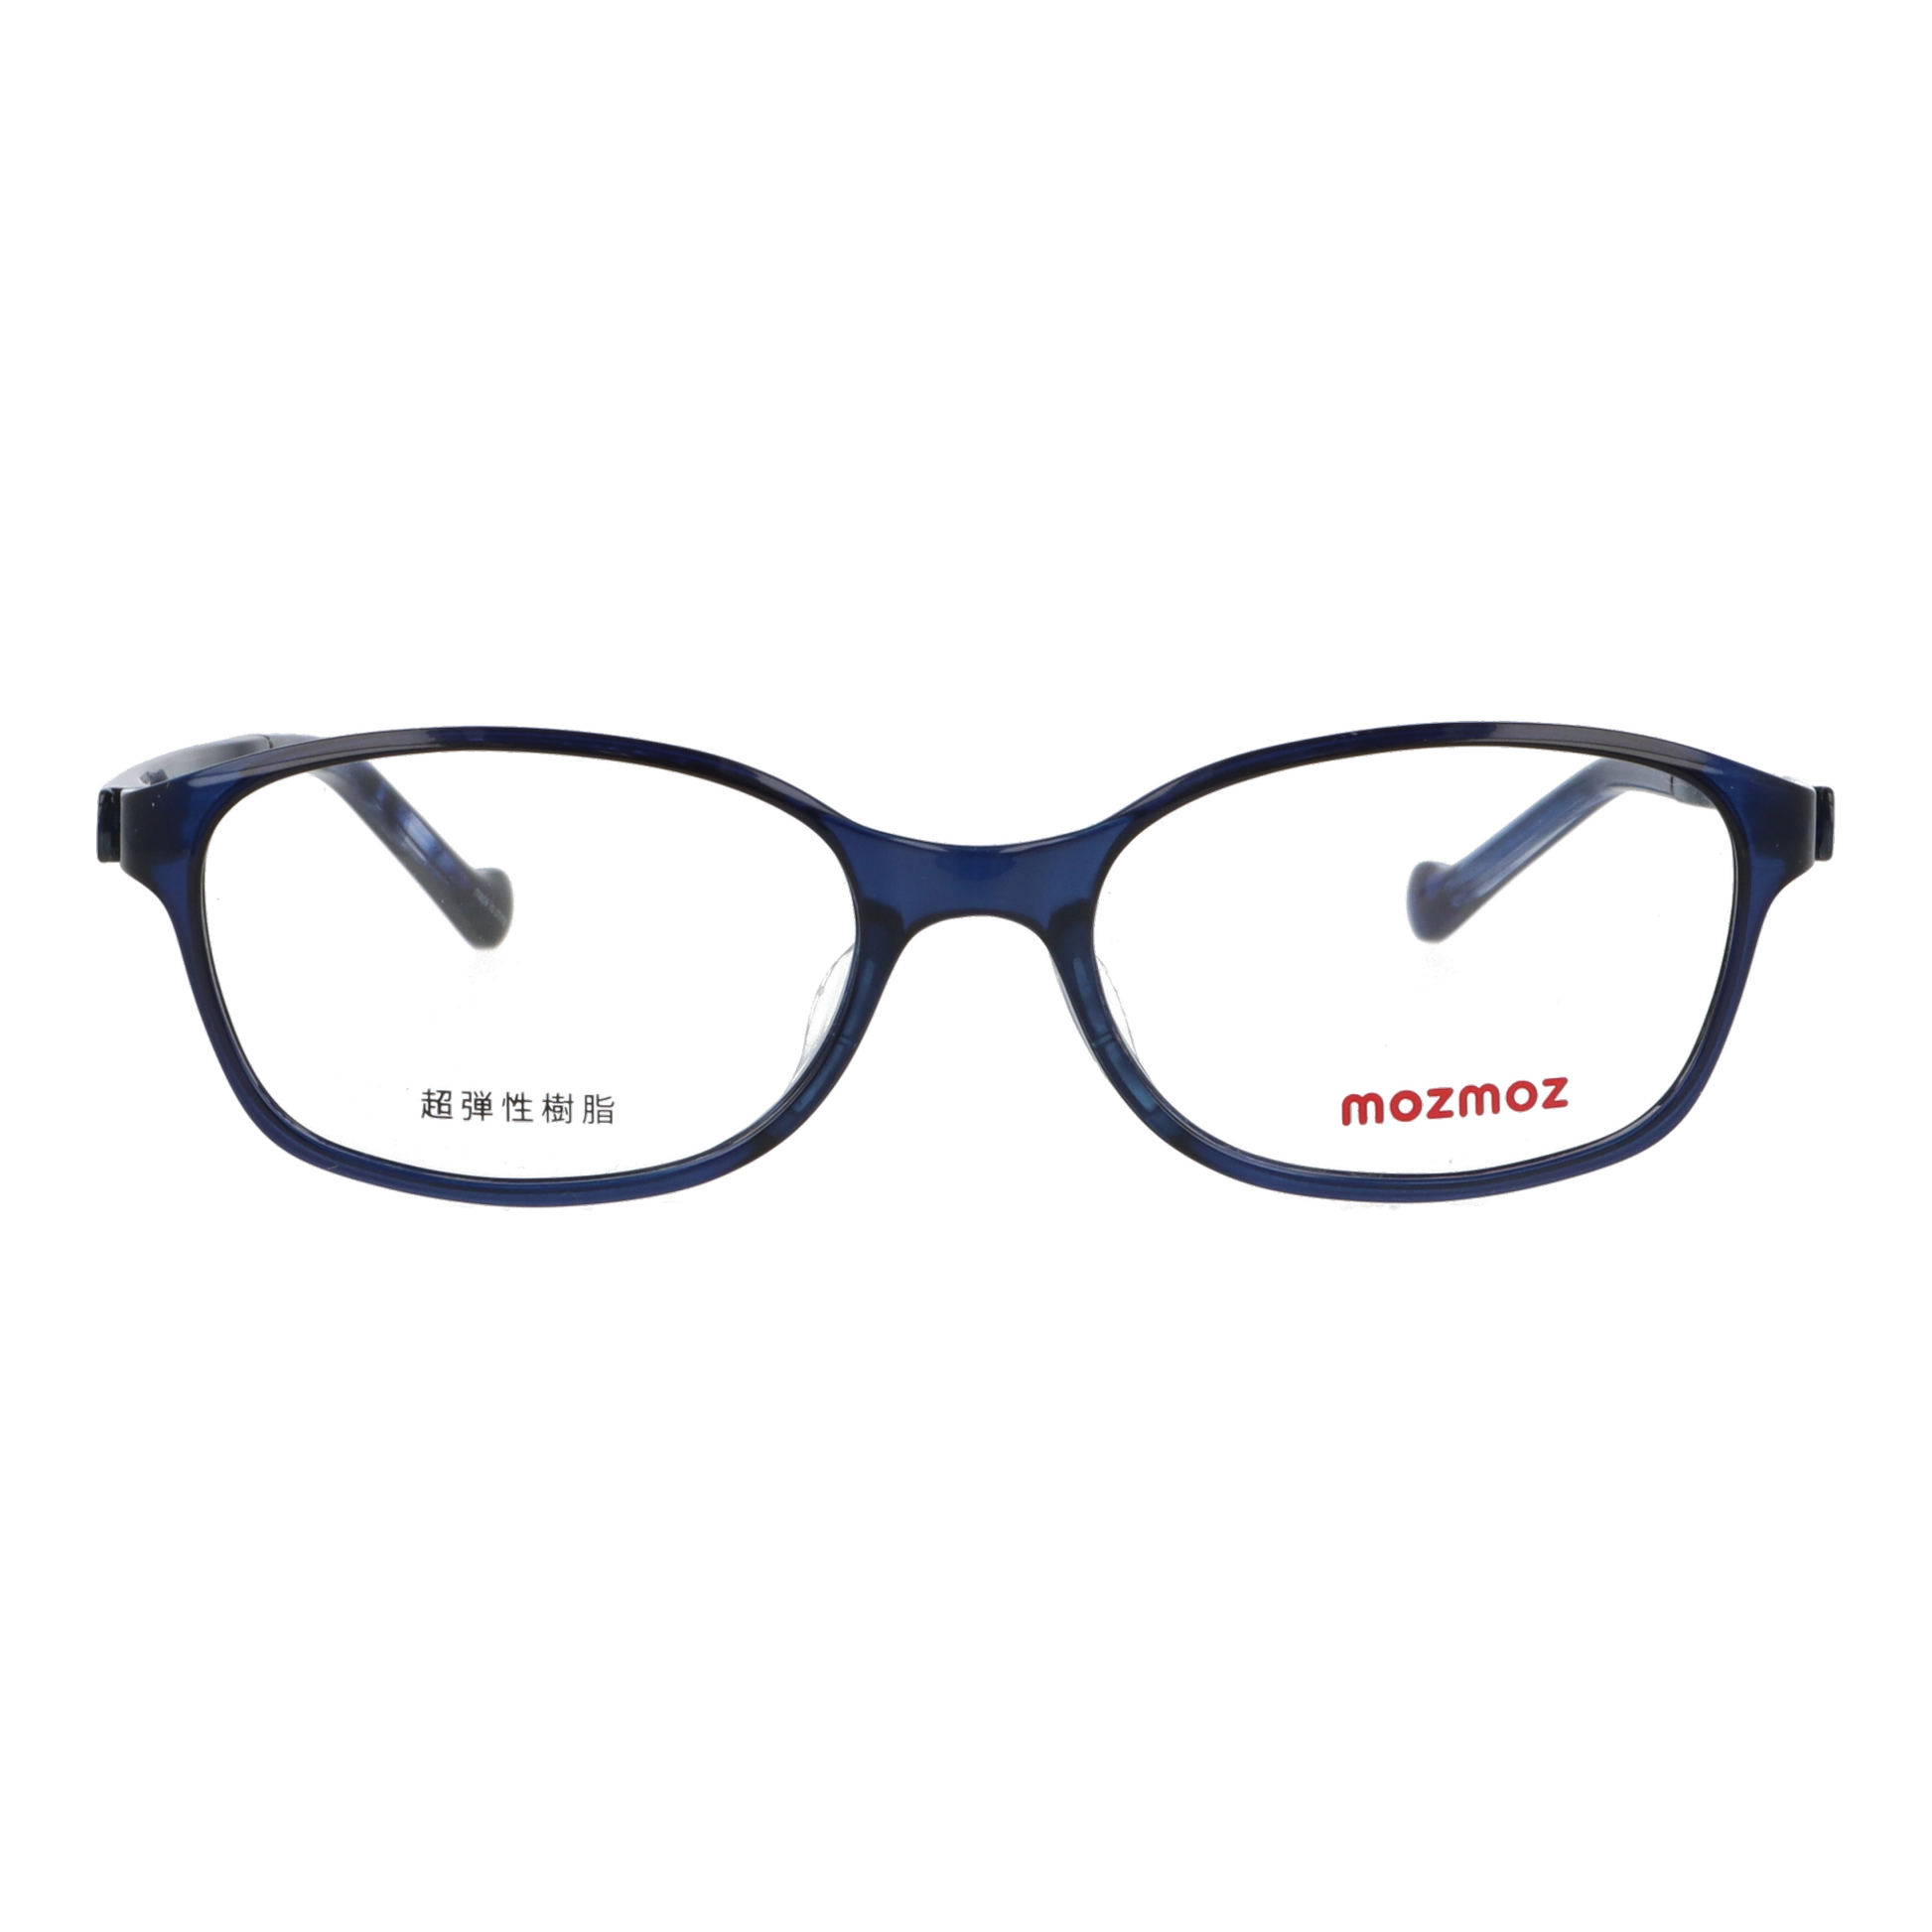 正面から見たアイウェア【軽量】こどもメガネ mo3001のカラーネイビー